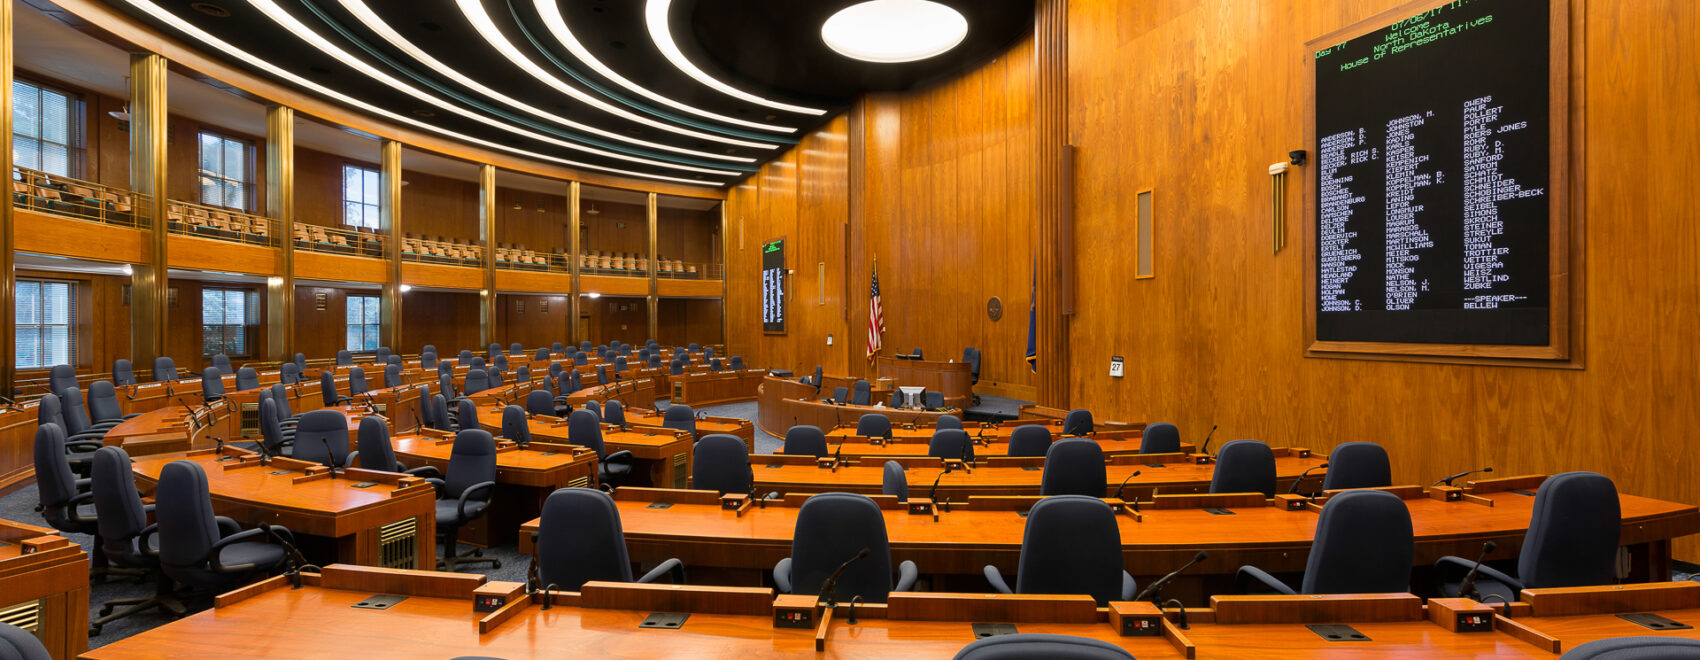 Photo of a senate chambers